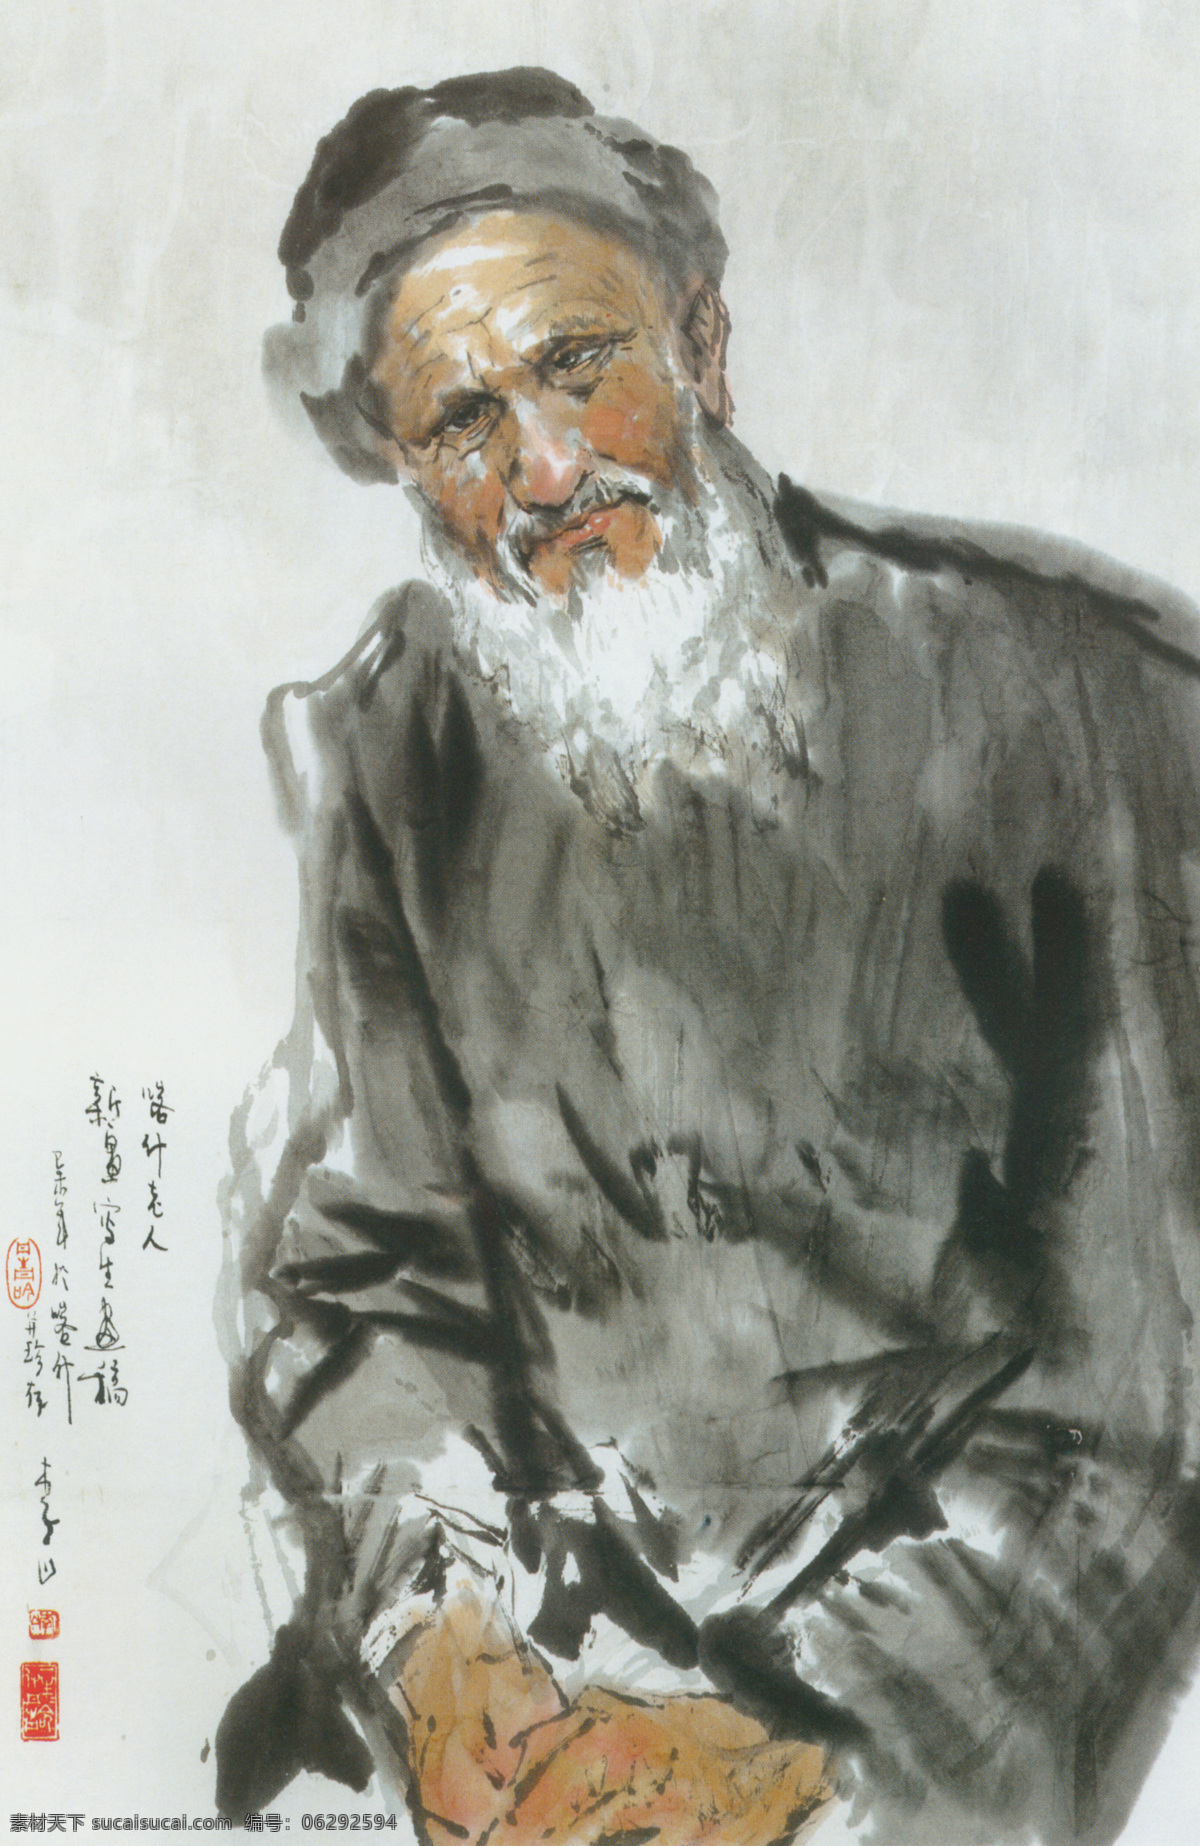 喀什老人图 少数民族 人物 画像 灰色